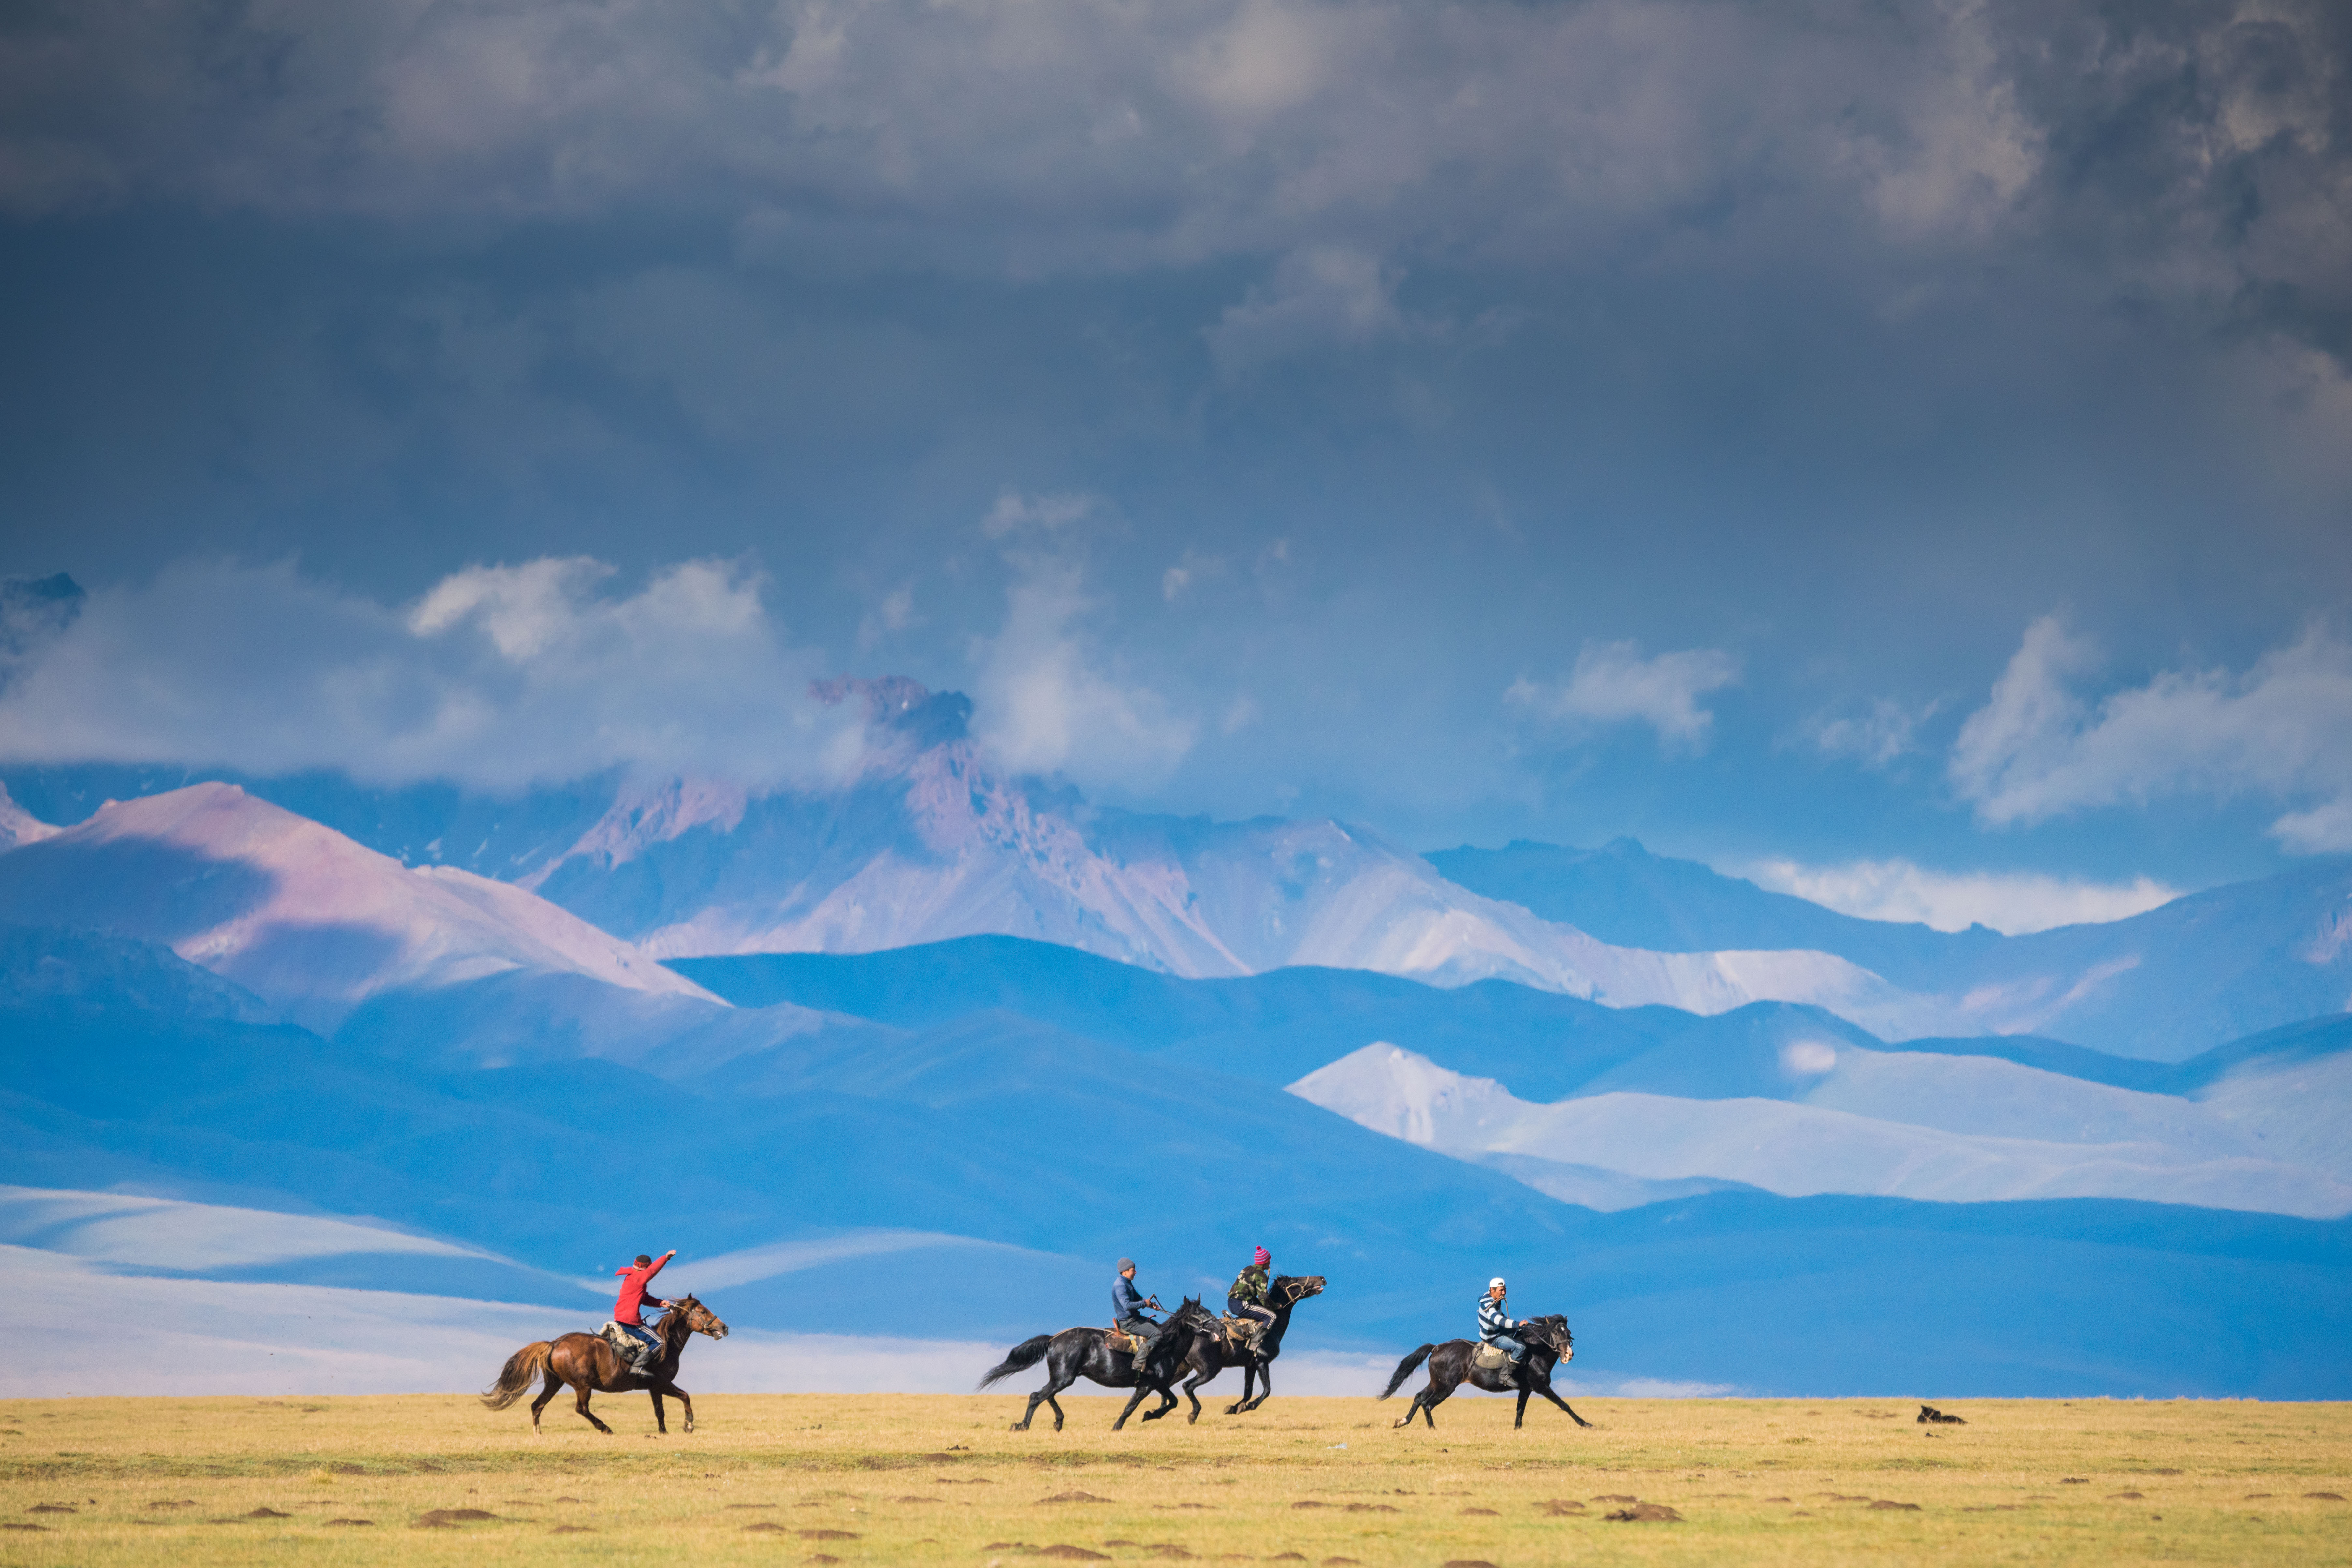 kyrgyzstan photography tour